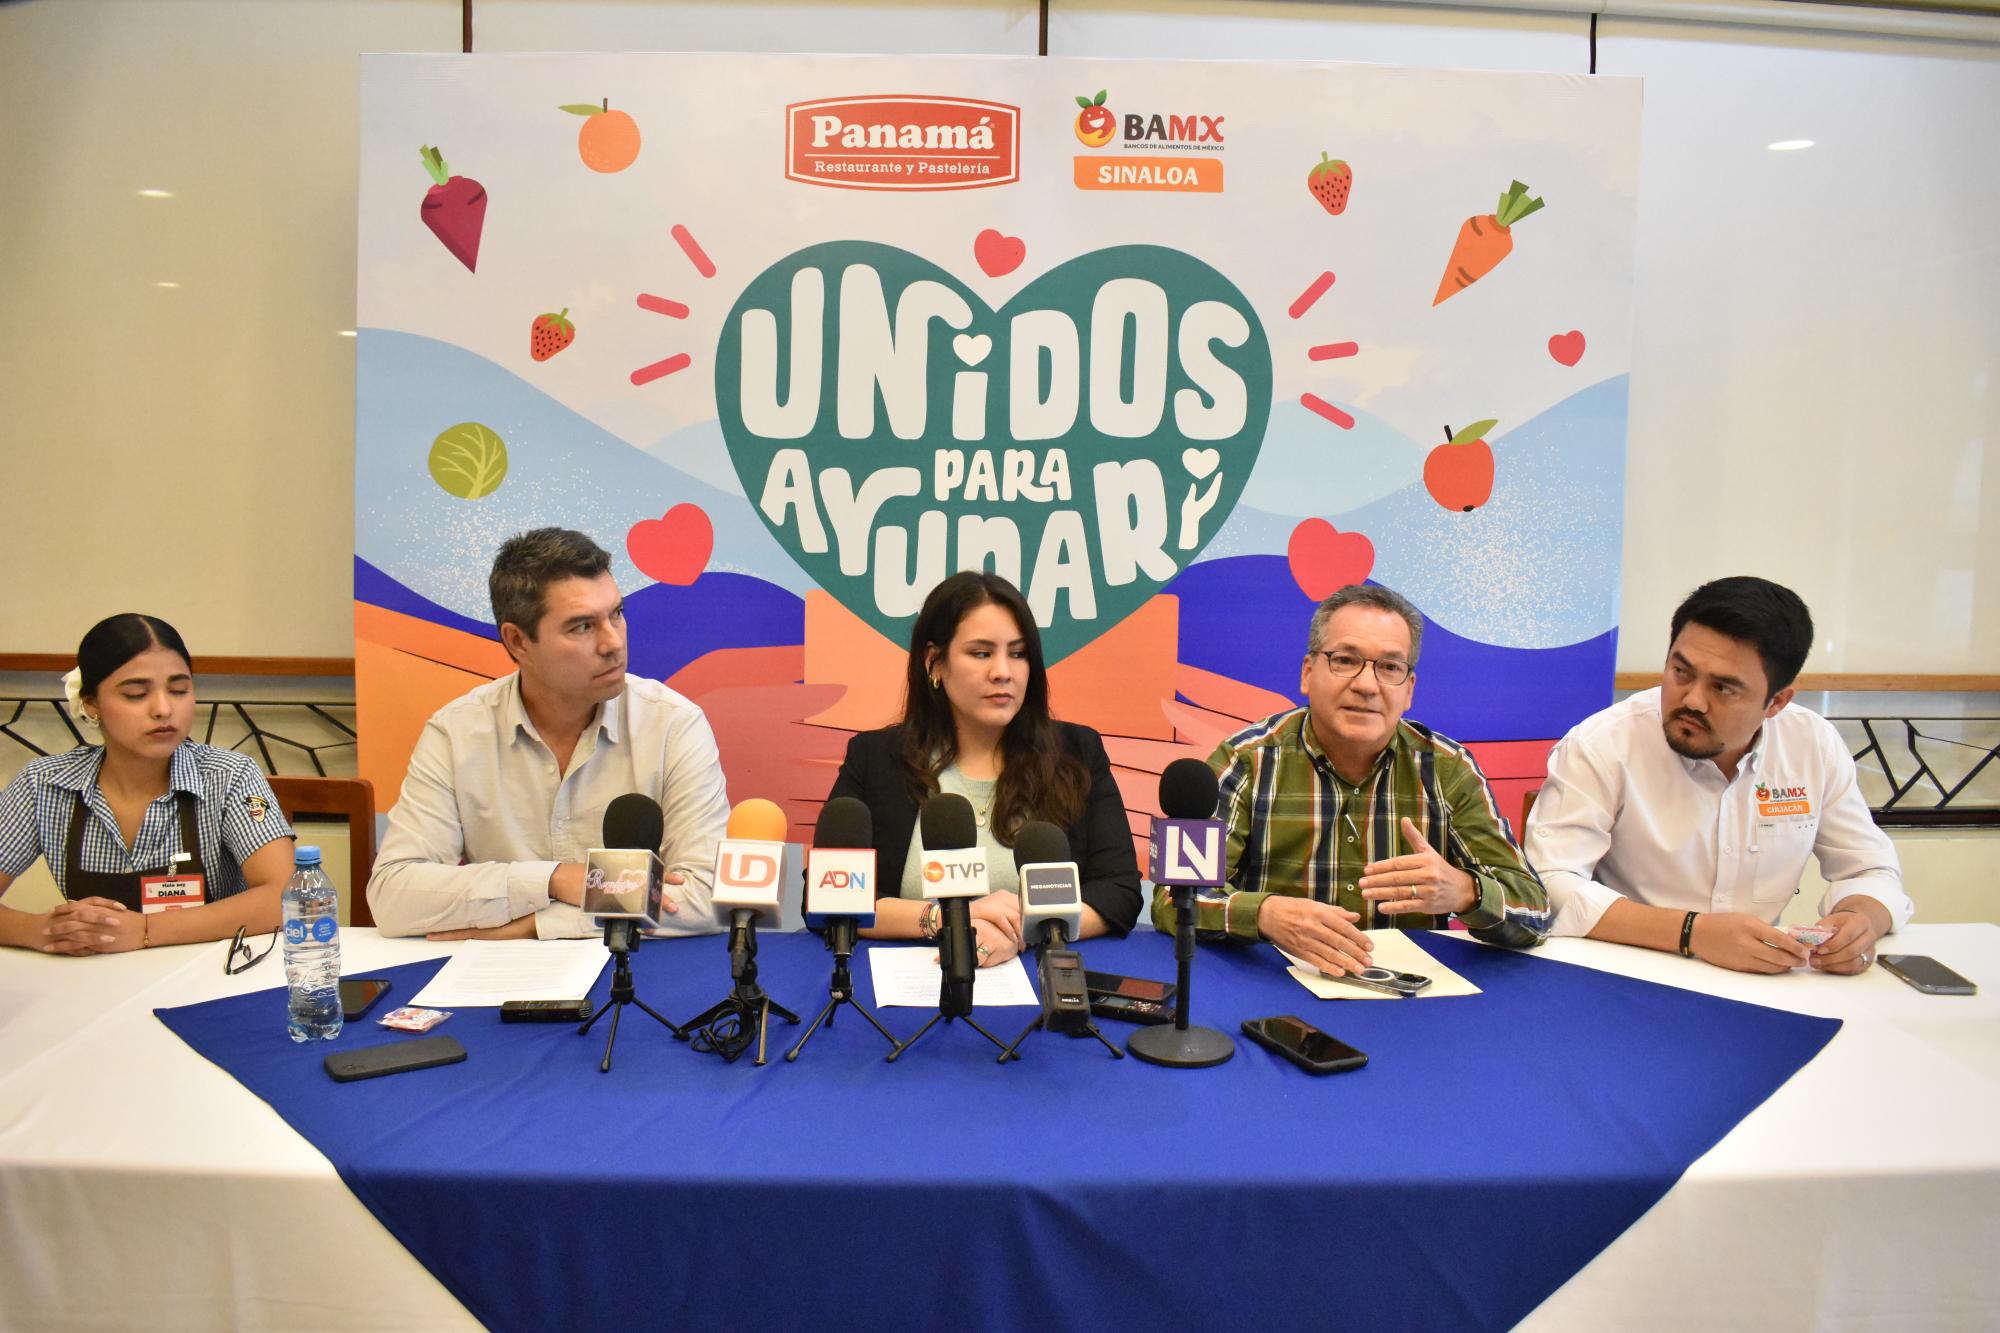 $!Uno a uno de los dirigentes de bancos de alimentos de Sinaloa compartió los detalles de esta campaña.